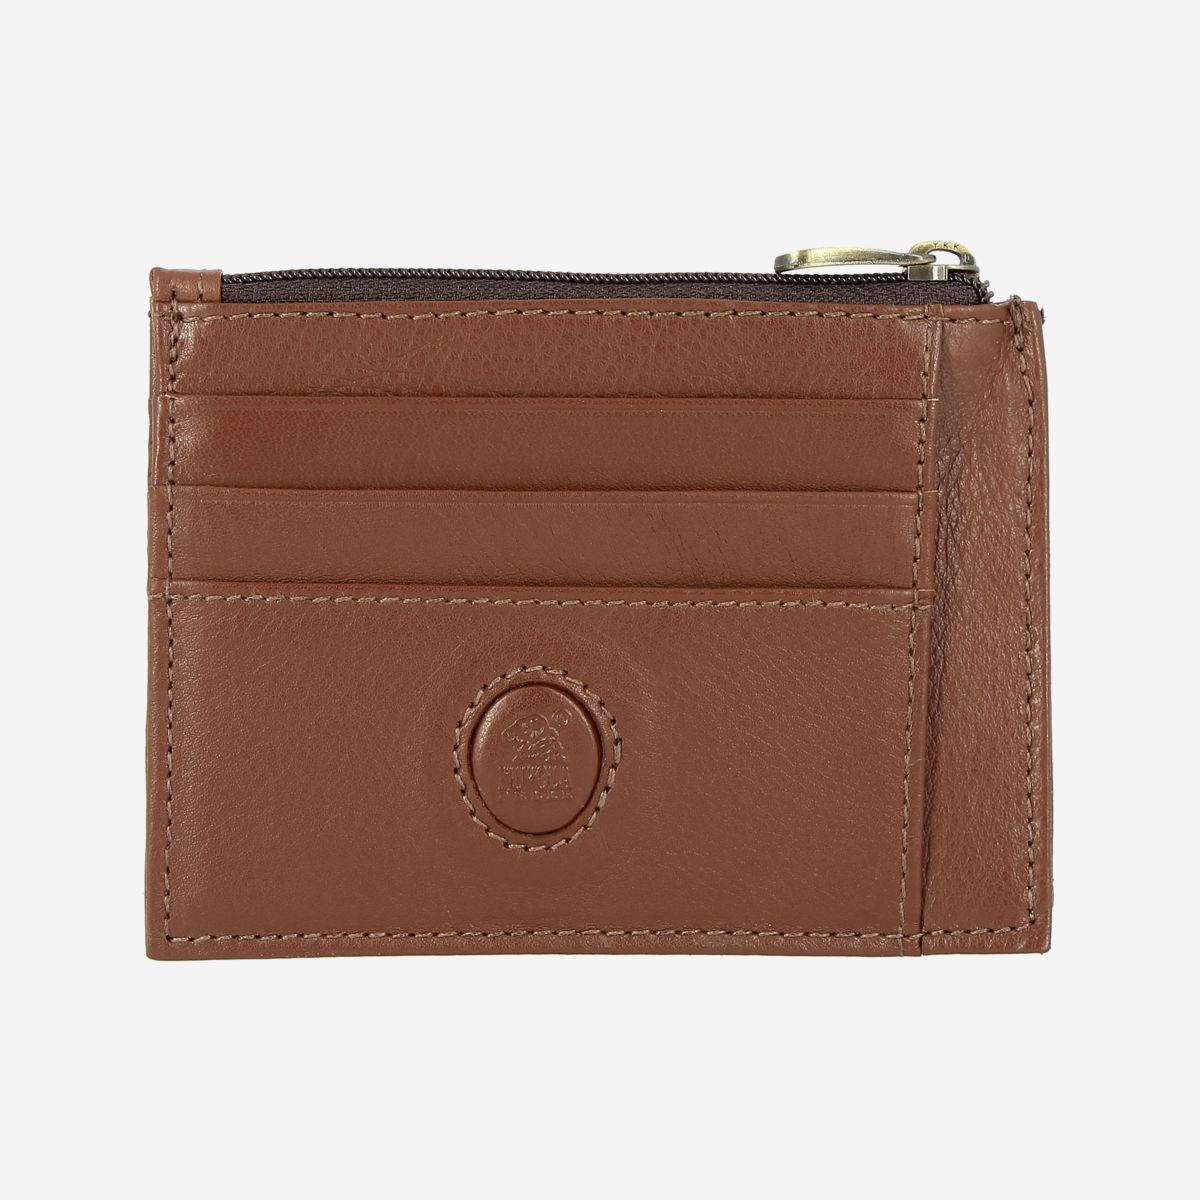 NUVOLA PELLE Slim Leather Credit Card Wallet - Dark Brown